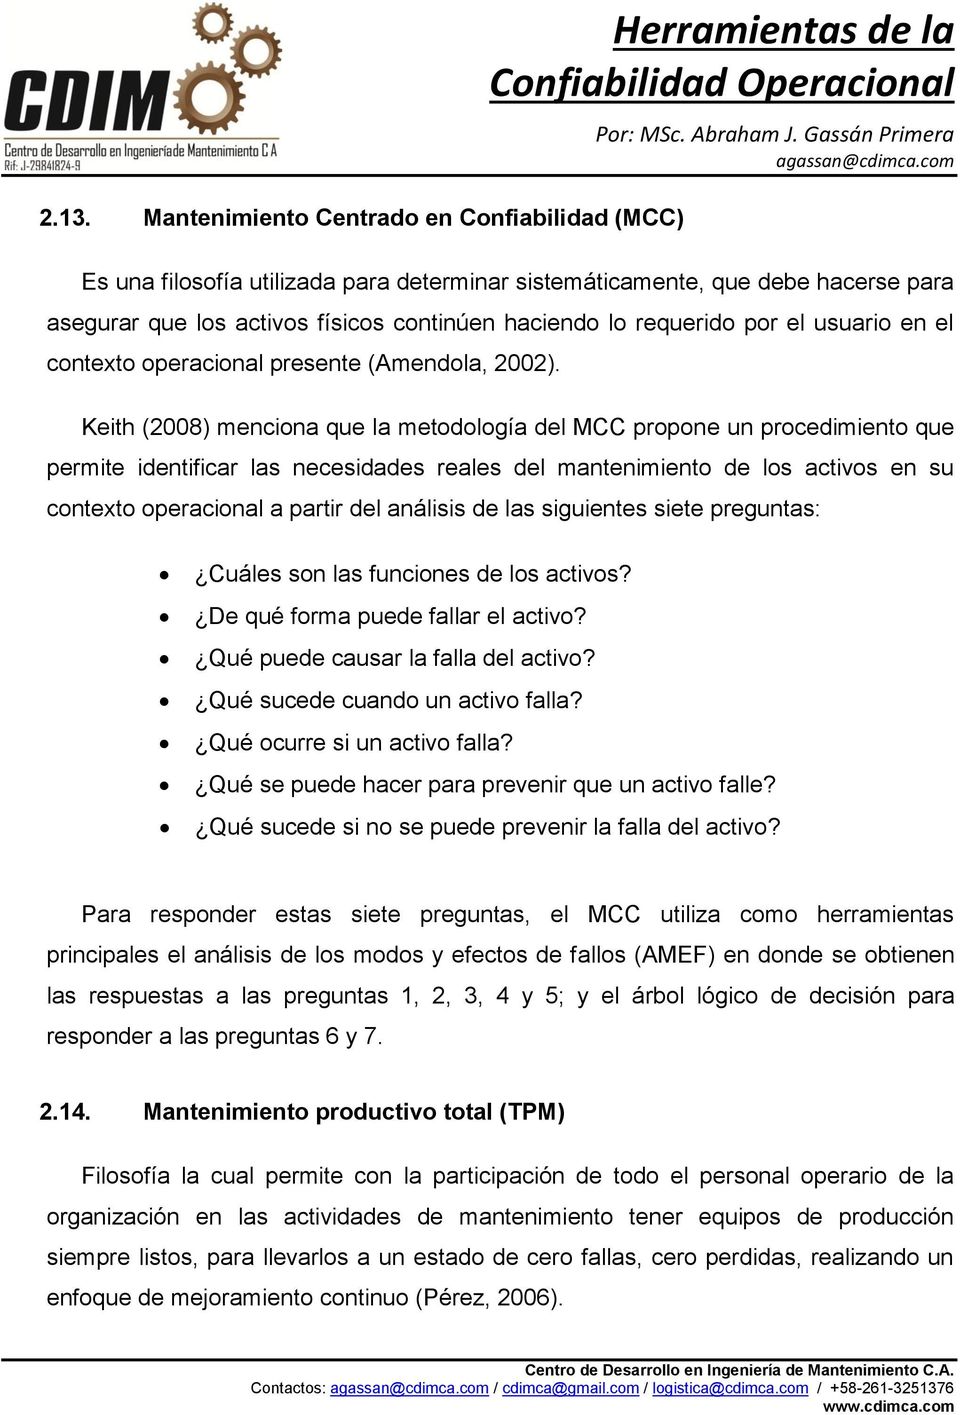 Keith (2008) menciona que la metodología del MCC propone un procedimiento que permite identificar las necesidades reales del mantenimiento de los activos en su contexto operacional a partir del